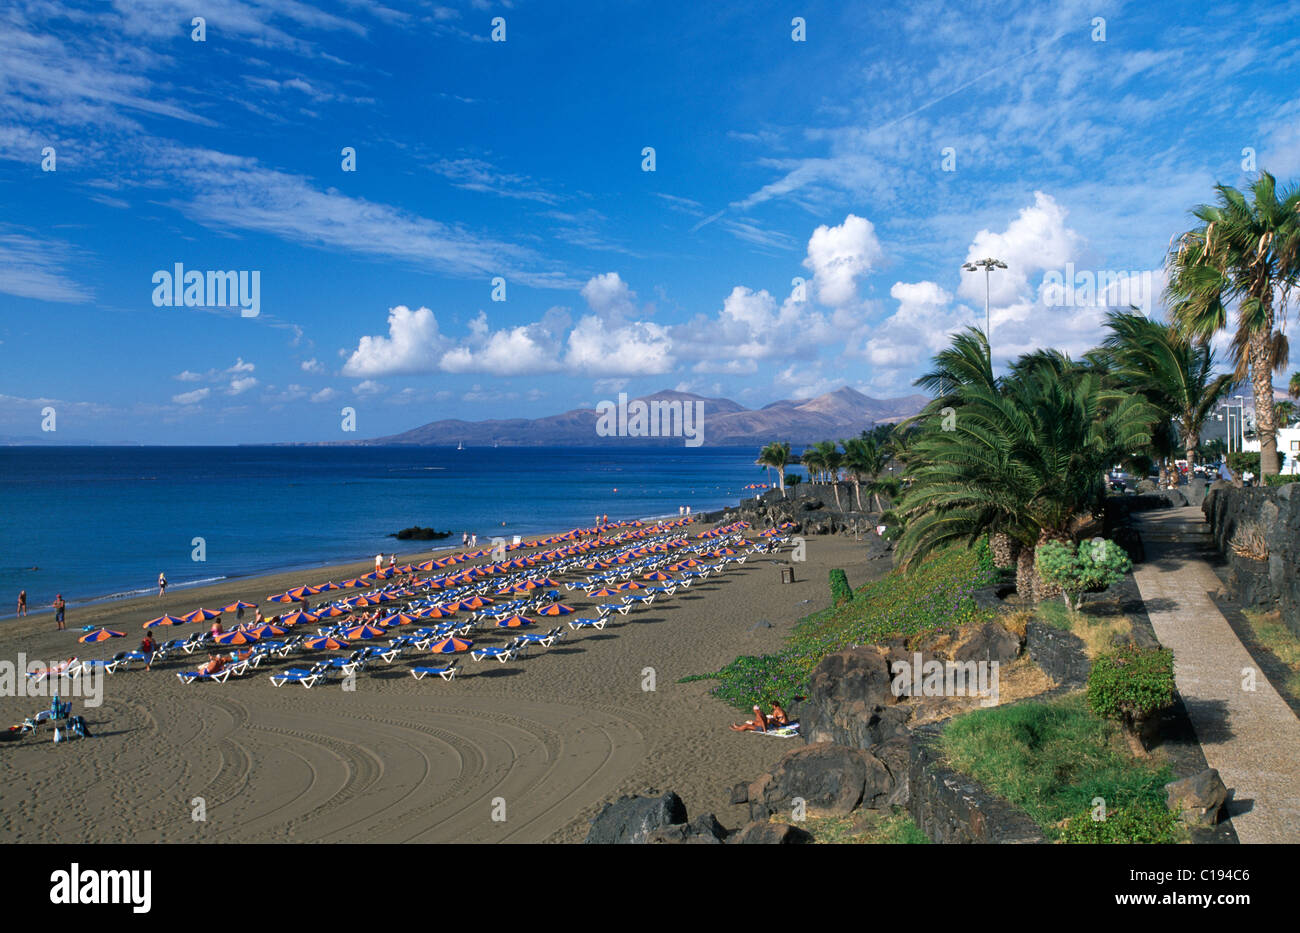 Playa Blanca Puerto del Carmen, Lanzarote, Canary Islands, Spain, Europe Banque D'Images